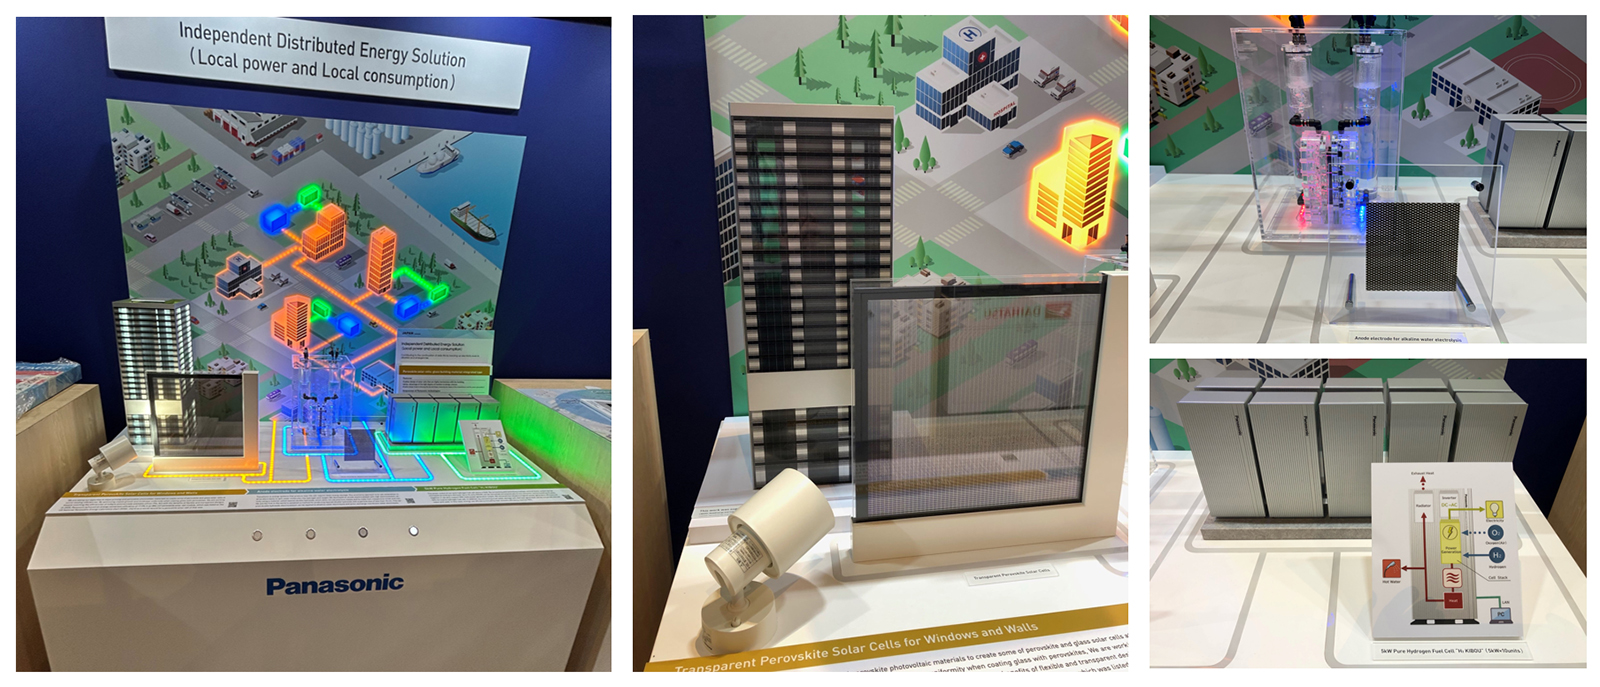 写真：パナソニックグループによる「エネルギー自立分散型ソリューション」の展示全体（左）、ぺロブスカイト太陽電池（中央）、グリーン水素生成装置（右上）、純水素型燃料電池（右下）